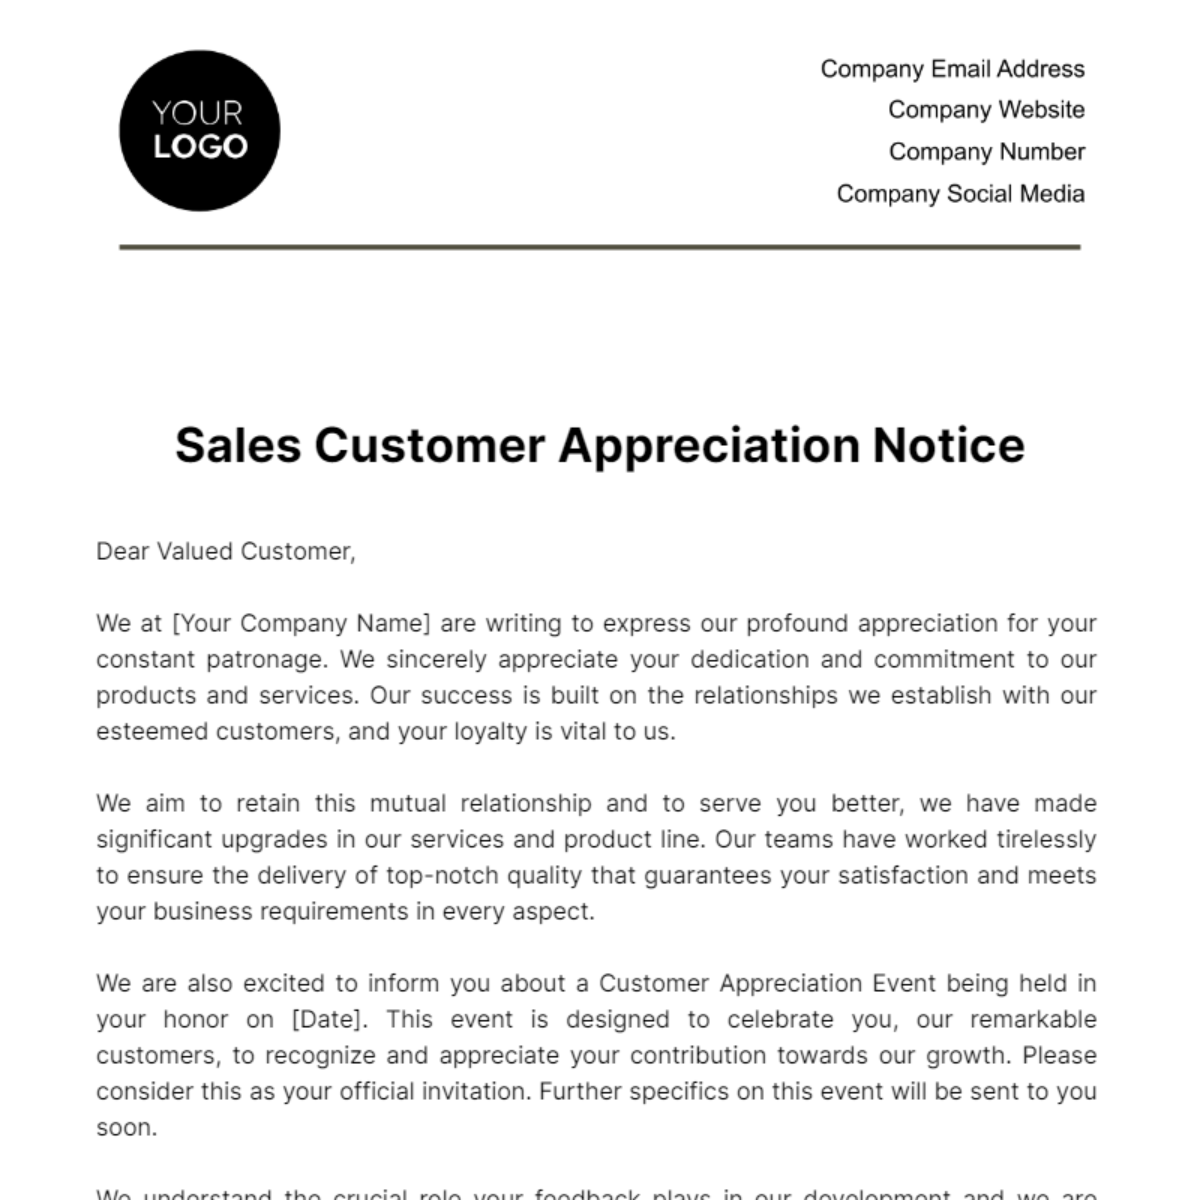 Free Sales Customer Appreciation Notice Template